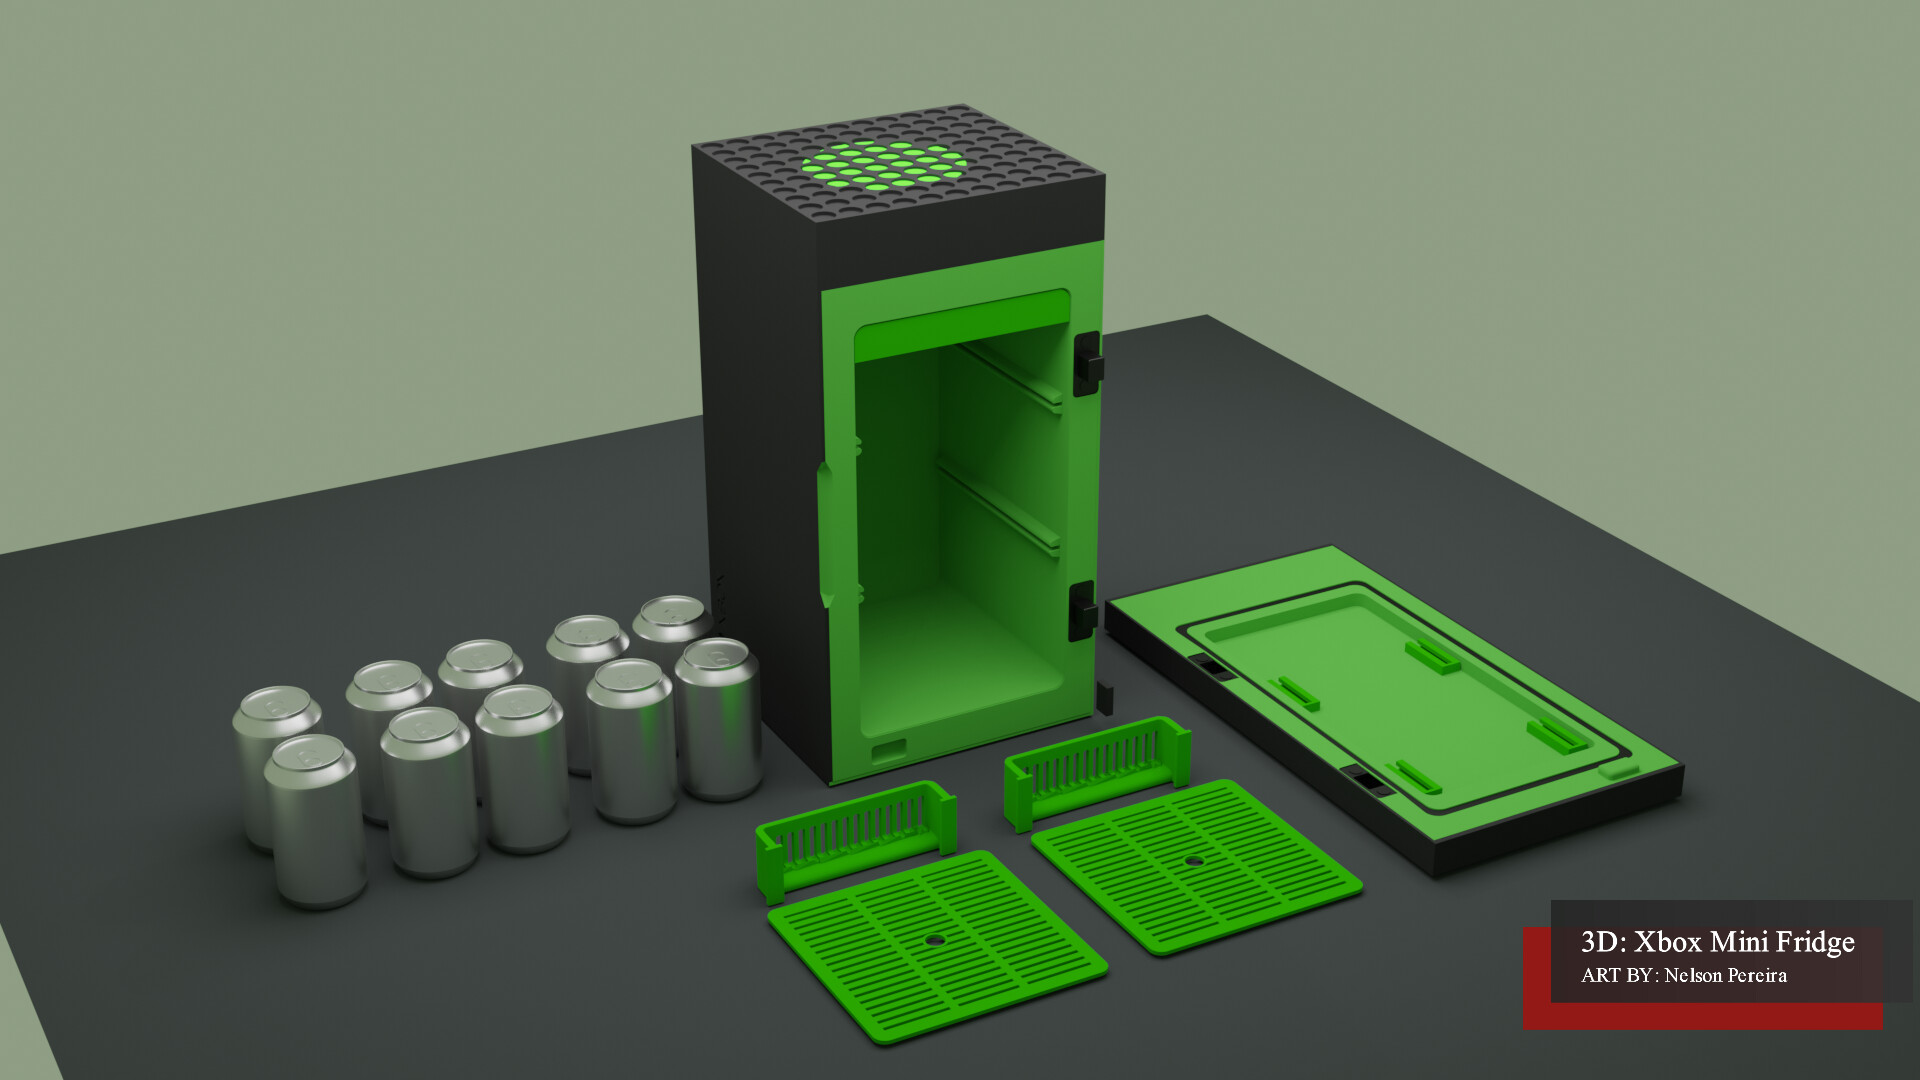 XBOX SERIESX MINI FRIDGE free 3D model